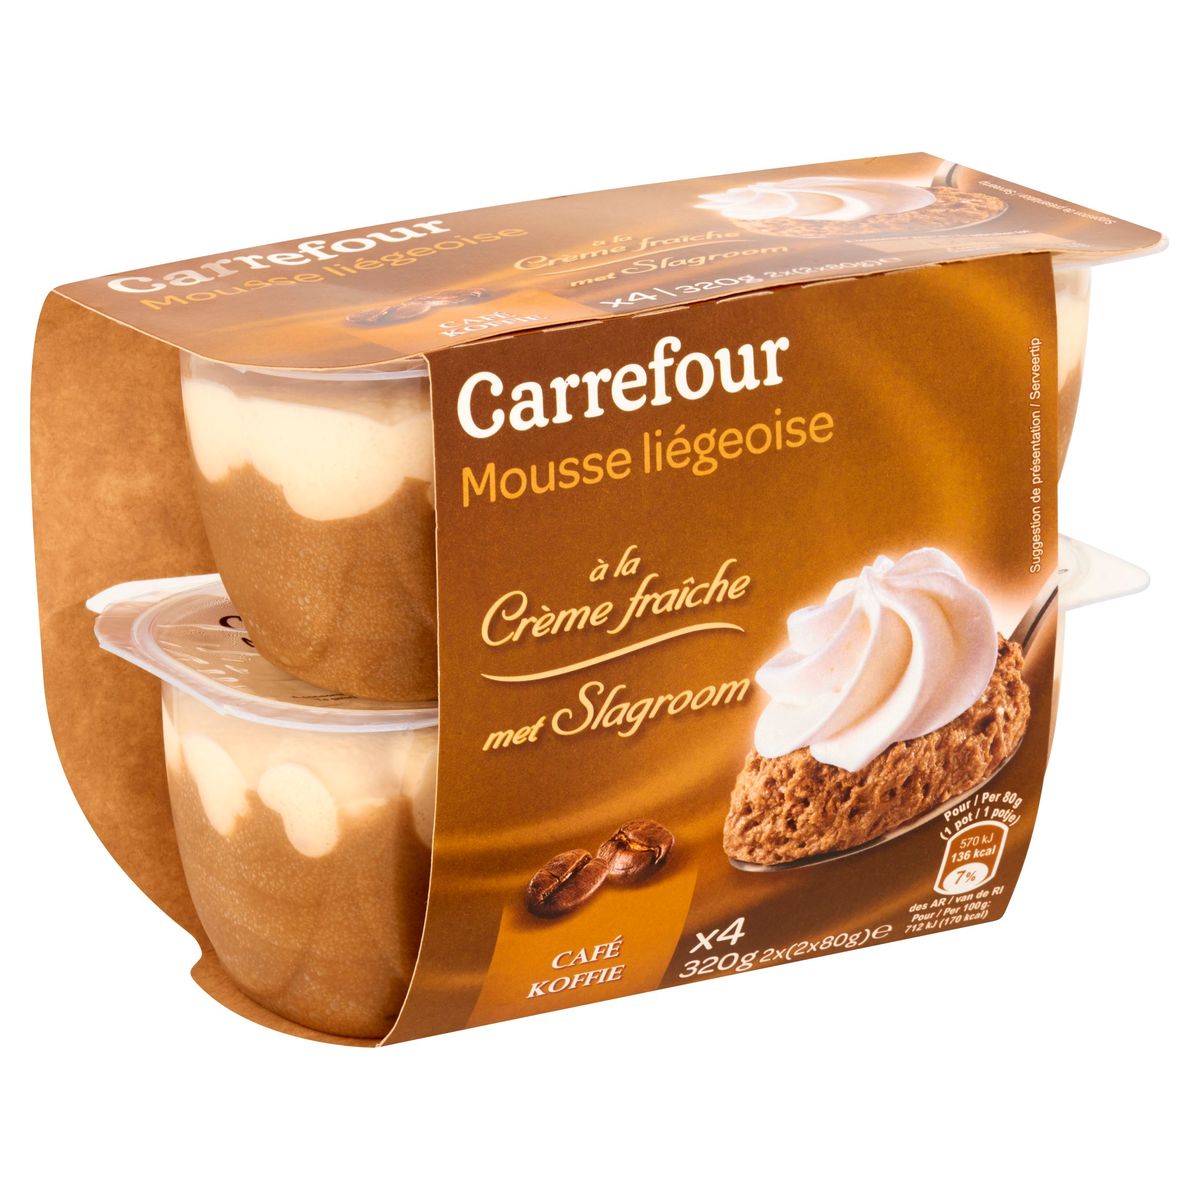 Carrefour Mousse Liégeoise met Slagroom Koffie 2 x (2 x 80 g)